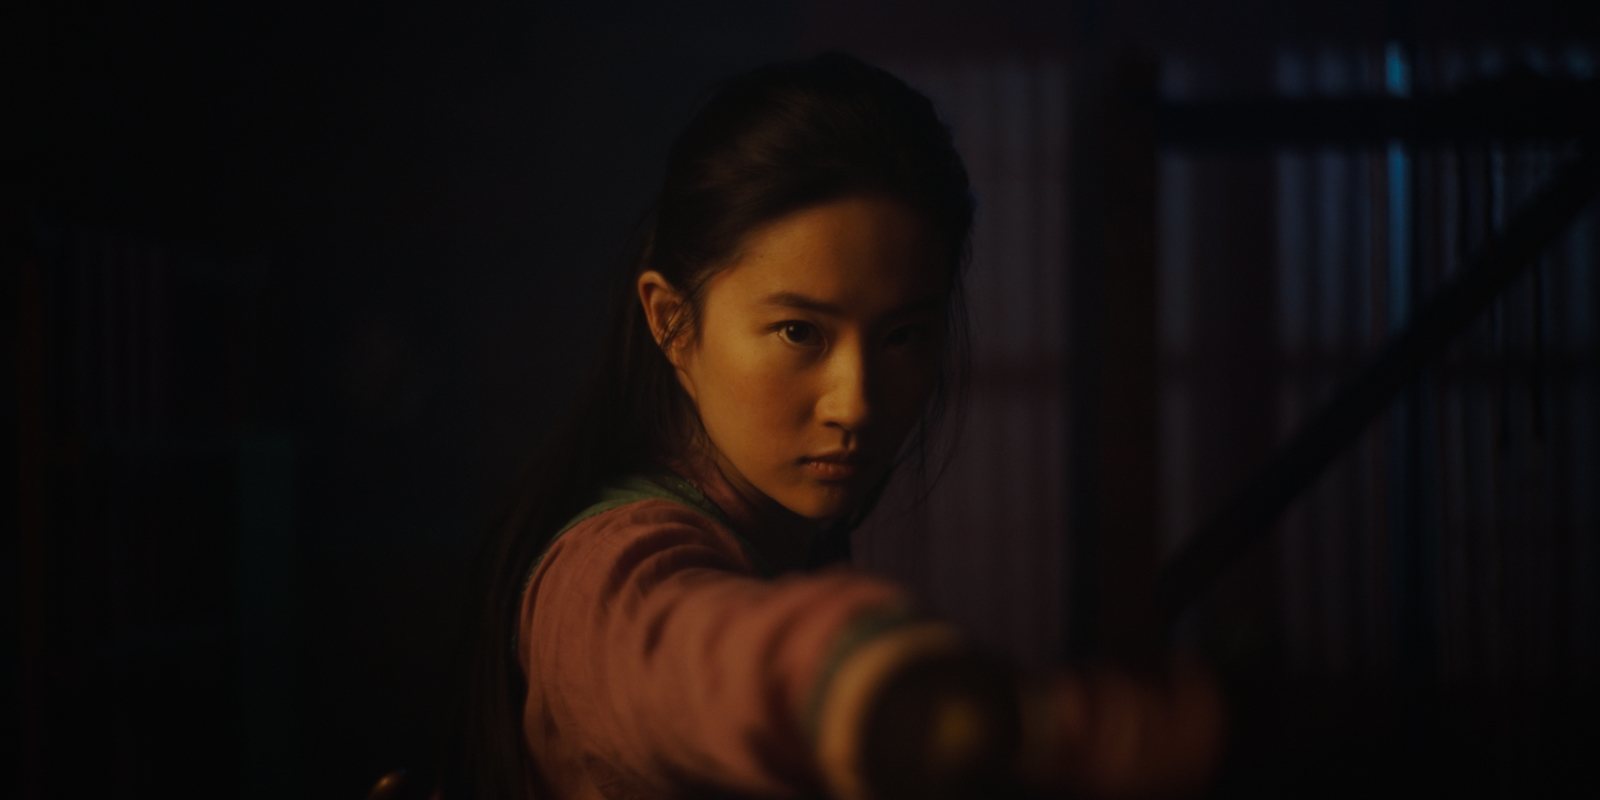 El estreno global del remake de 'Mulan' corre peligro